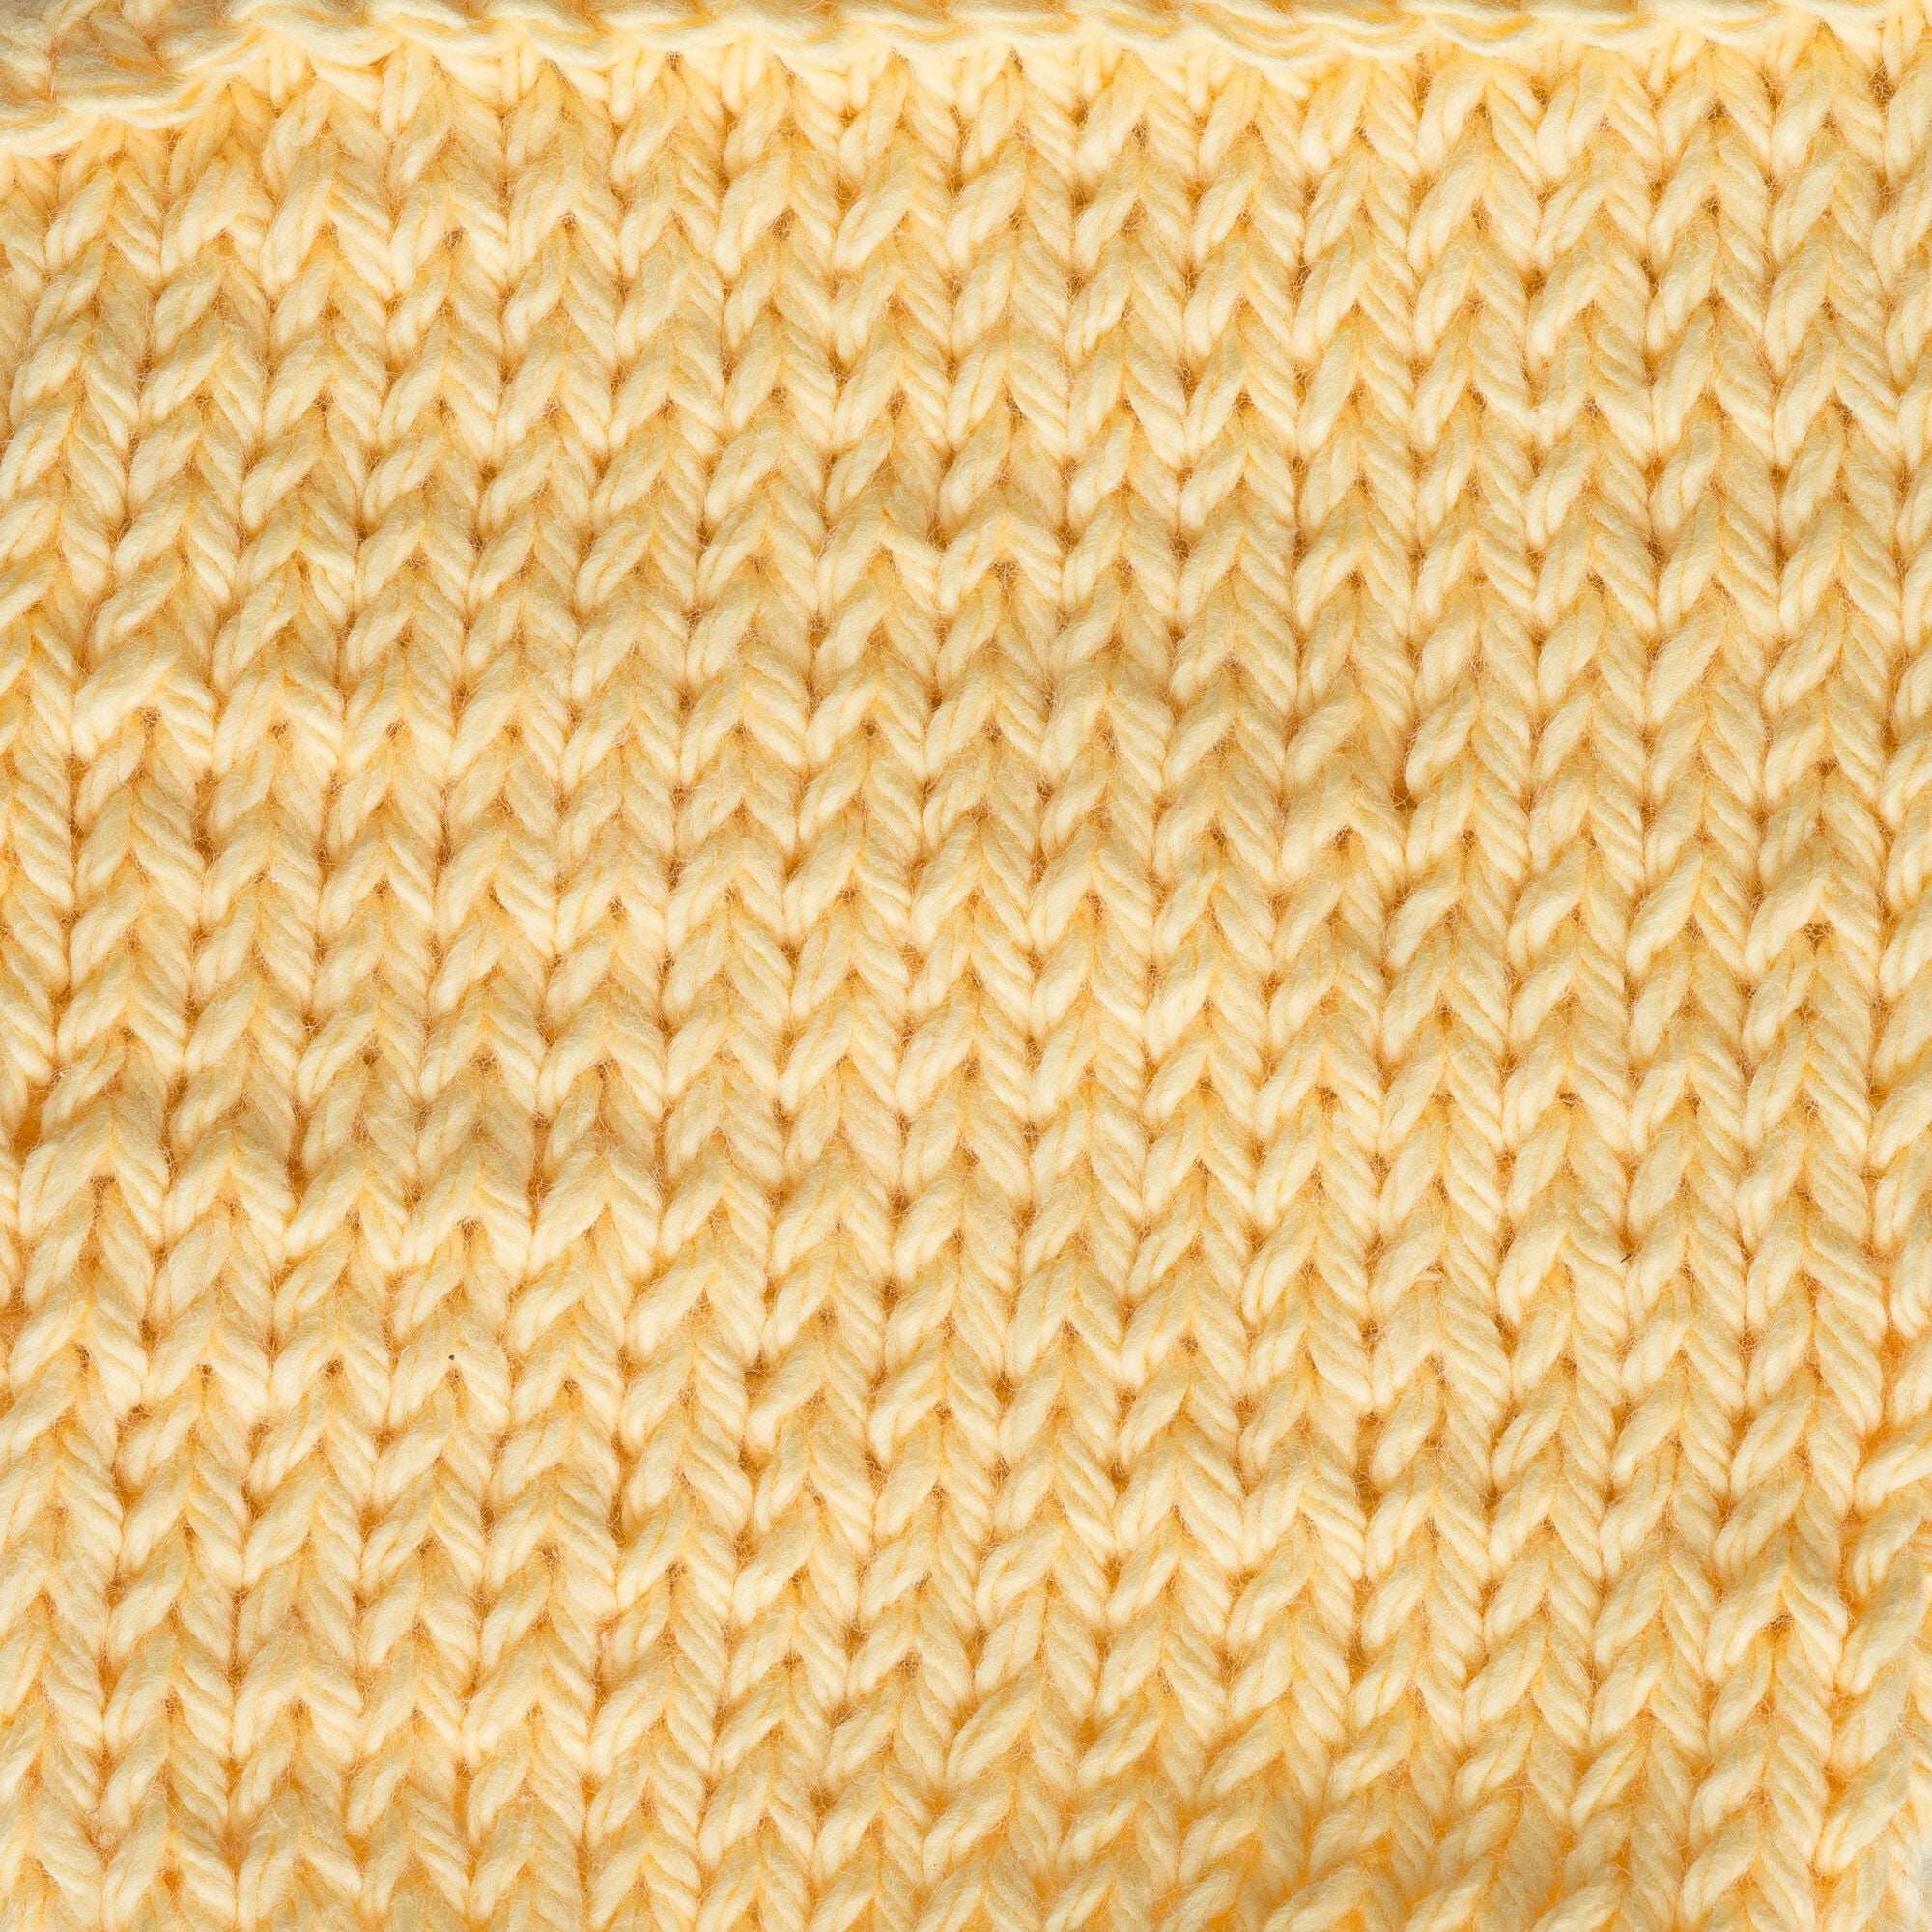 SONOMA - 14oz  674 yards Cone. Lily Sugar N Cream Cotton yarn. 100% cotton.  Item# 10300202718